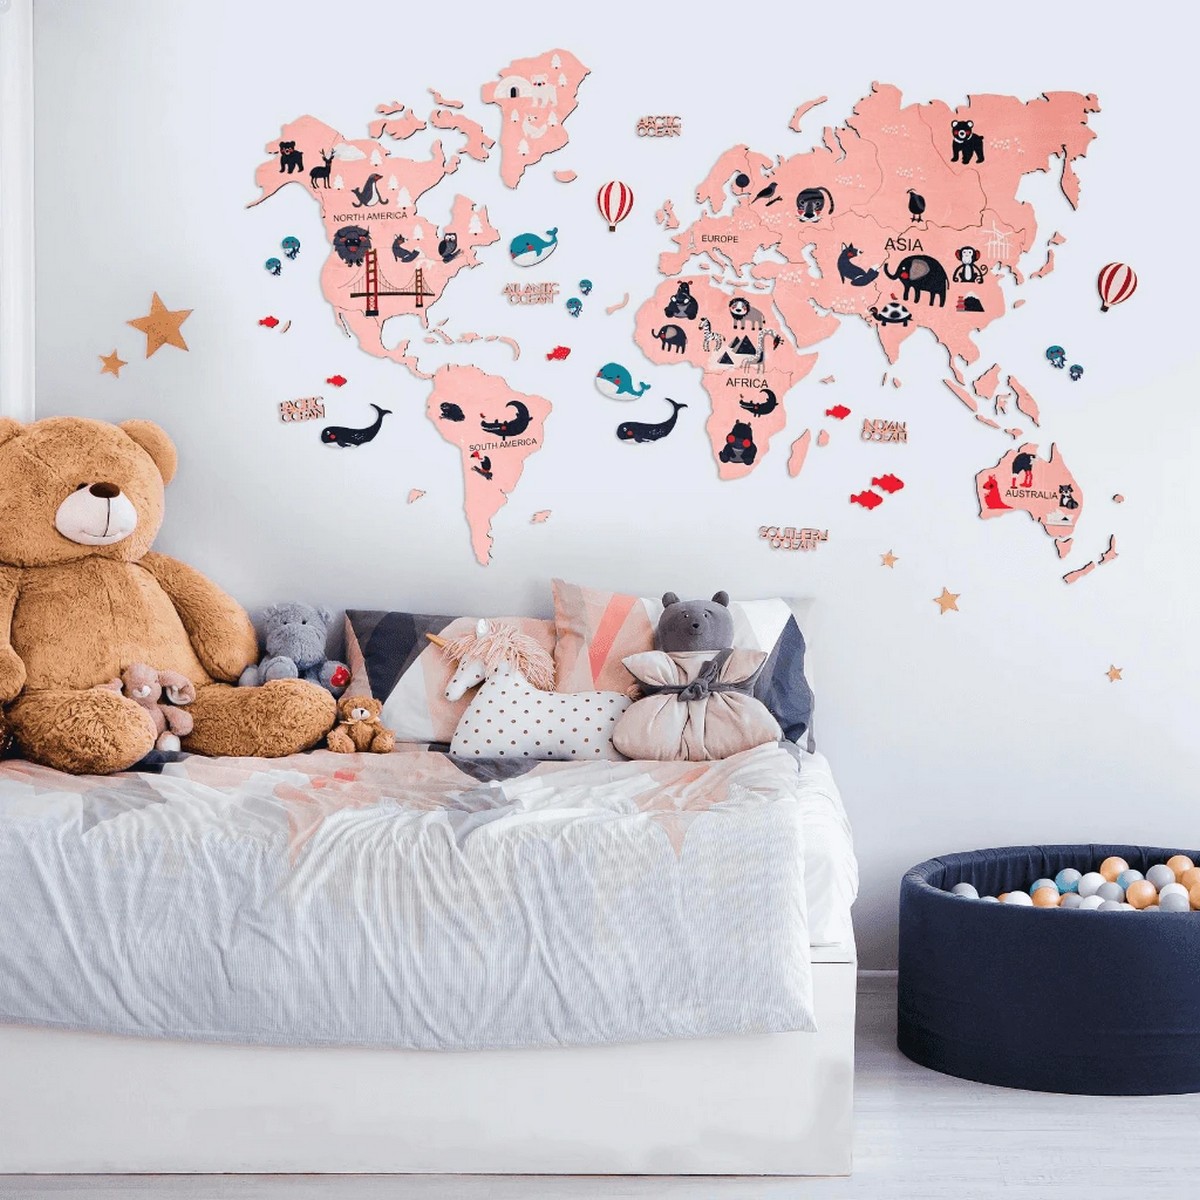 peta dunia untuk kanak-kanak - merah jambu